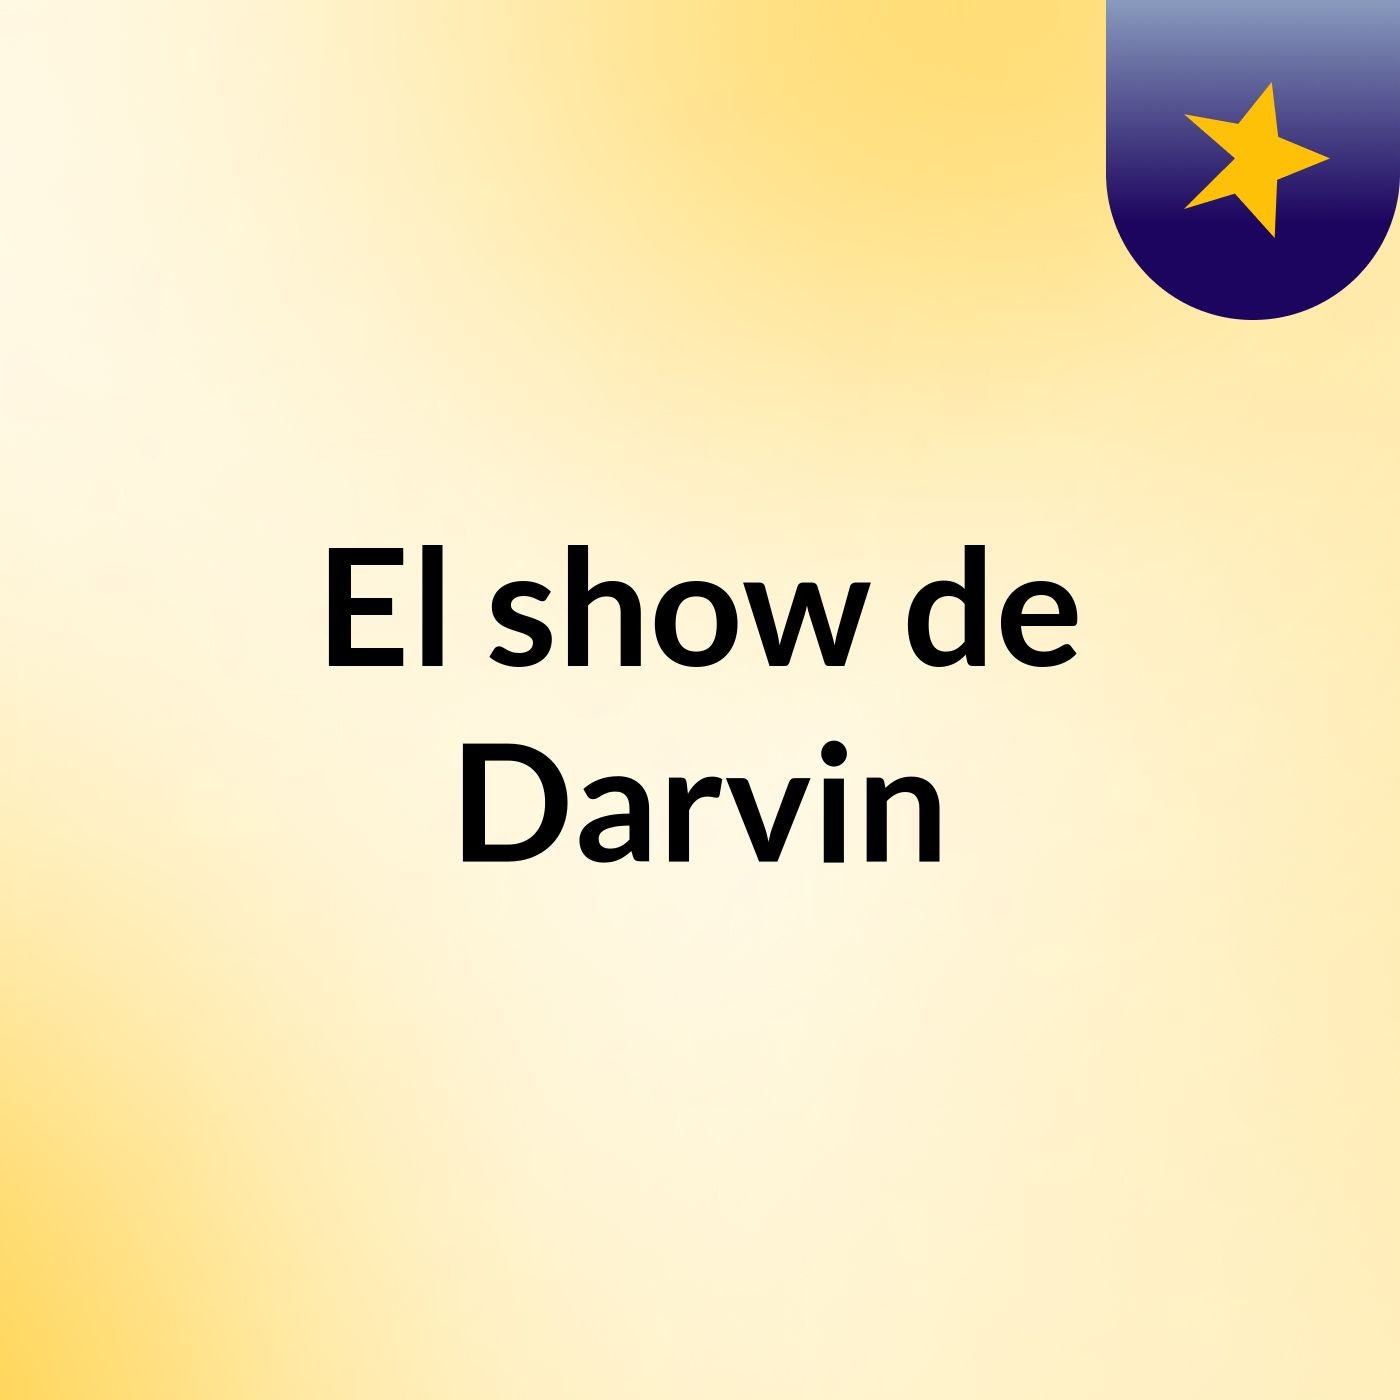 El show de Darvin